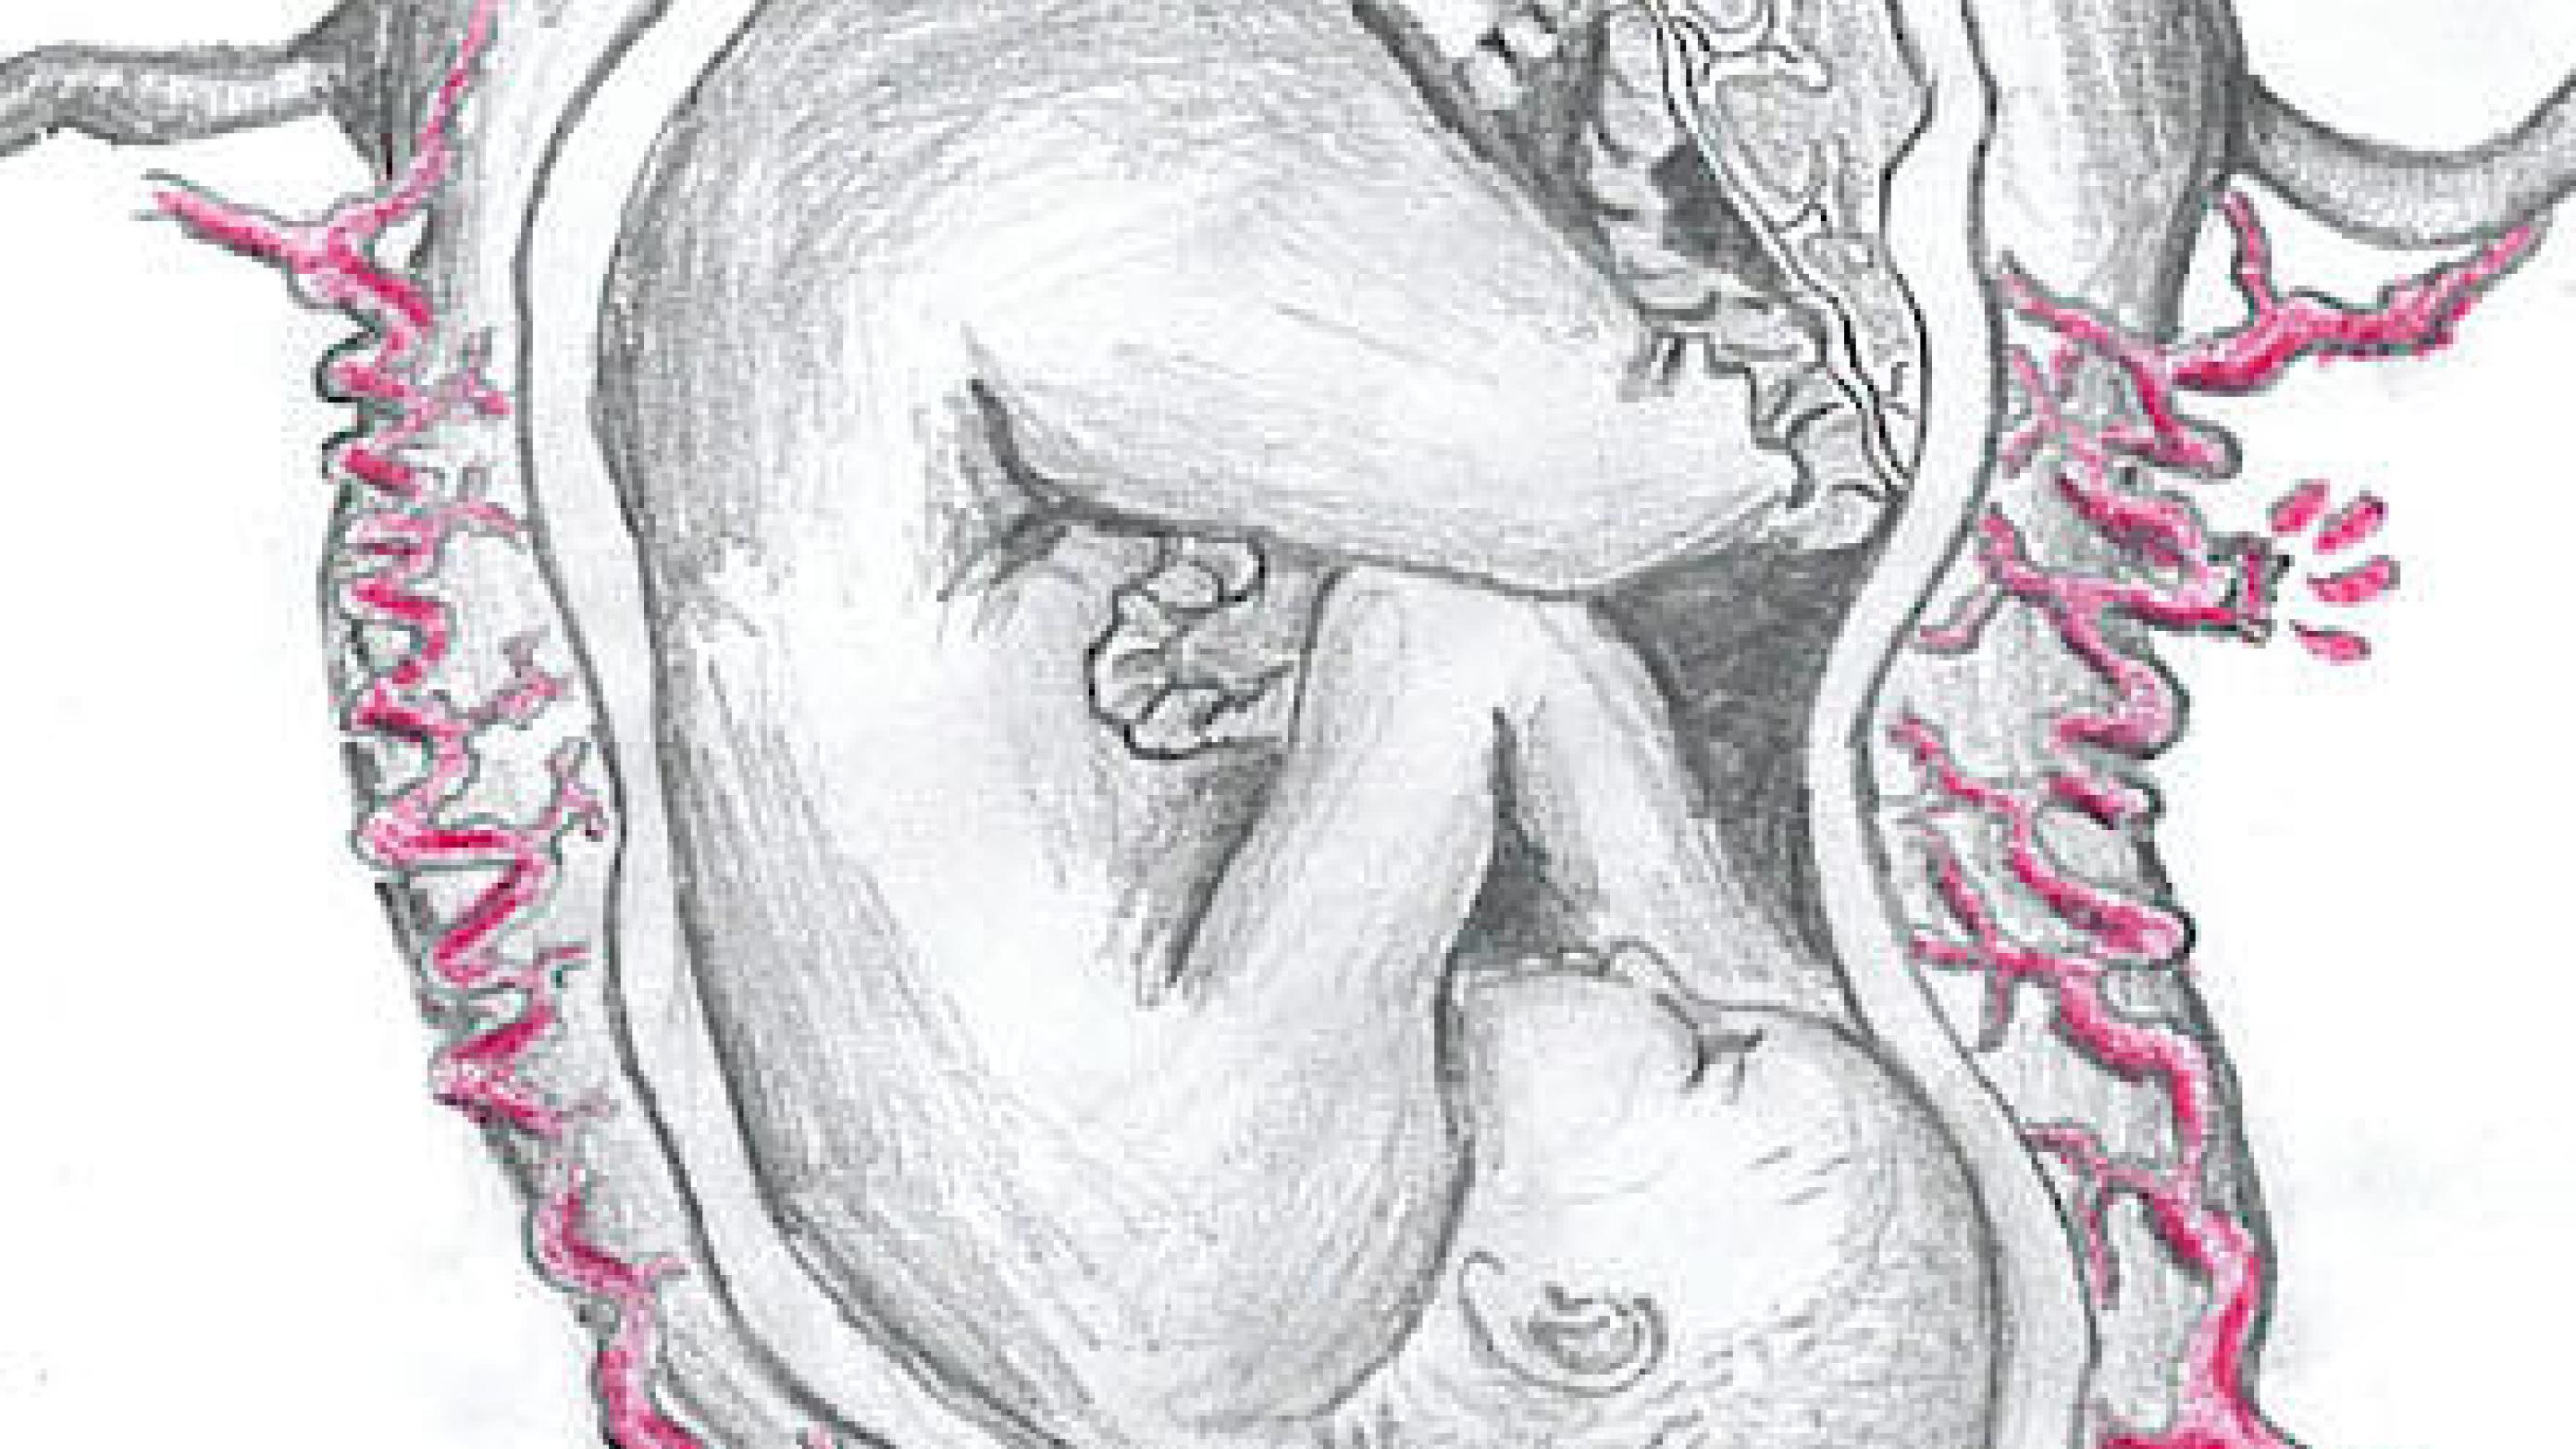 Spontan ruptur af a. uterina i gravid uterus.